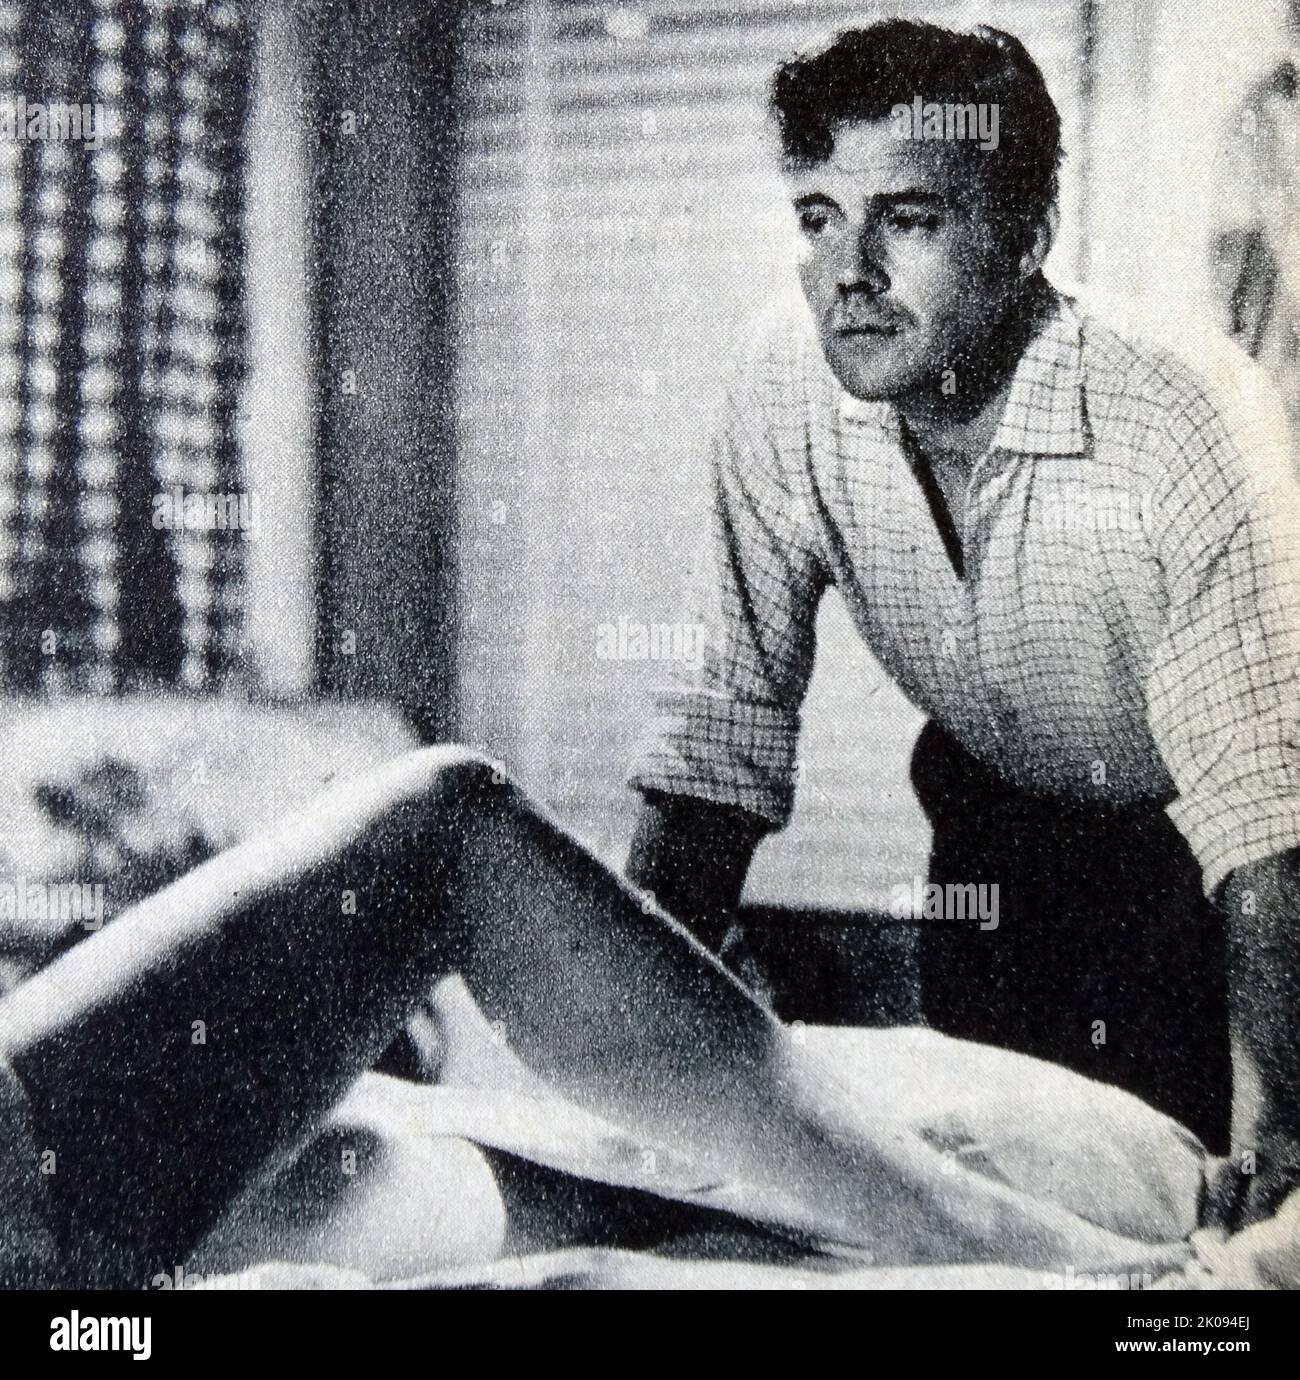 Zeitungsbericht über The Mind Benders, ein britischer Thriller-Film aus dem Jahr 1963, Foto von Dirk Bogarde. Stockfoto